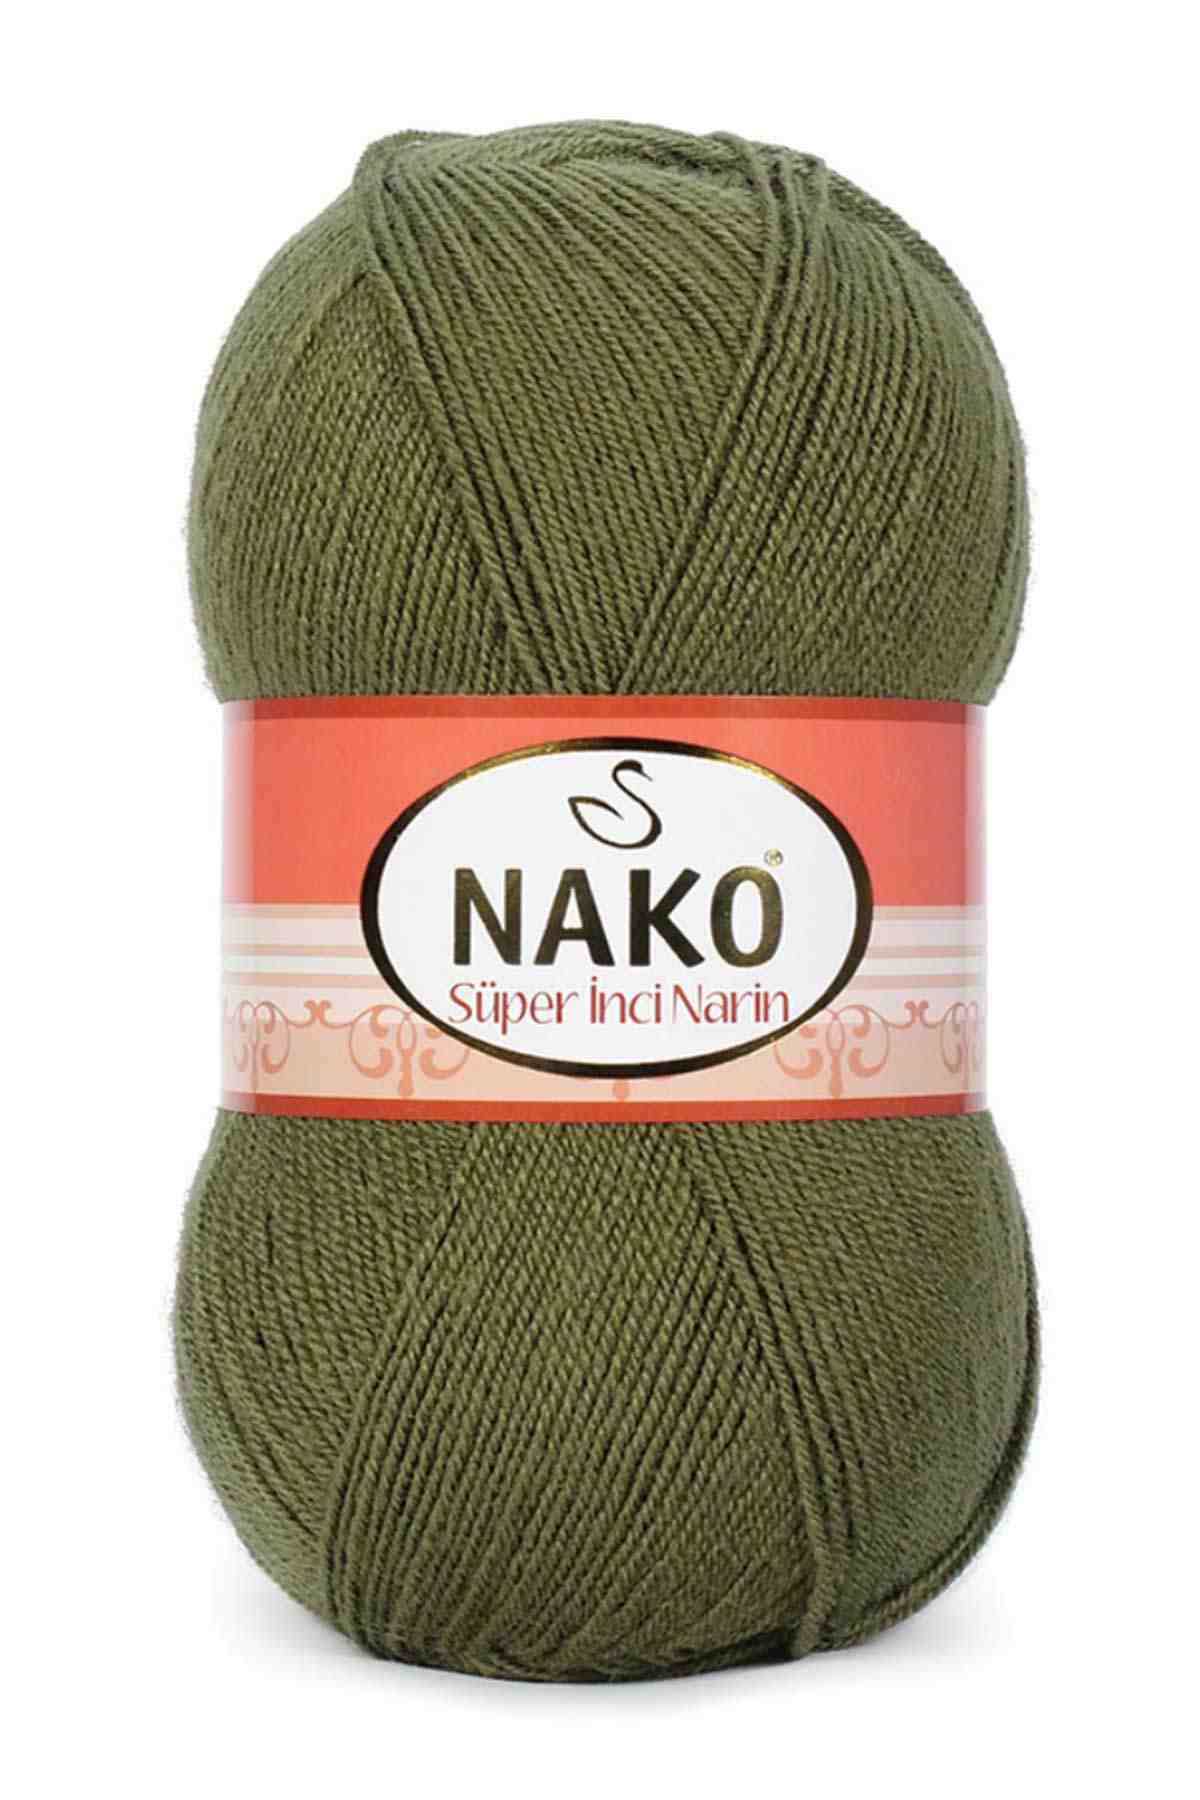 Nako Süper İnci Narin Wool Yarn